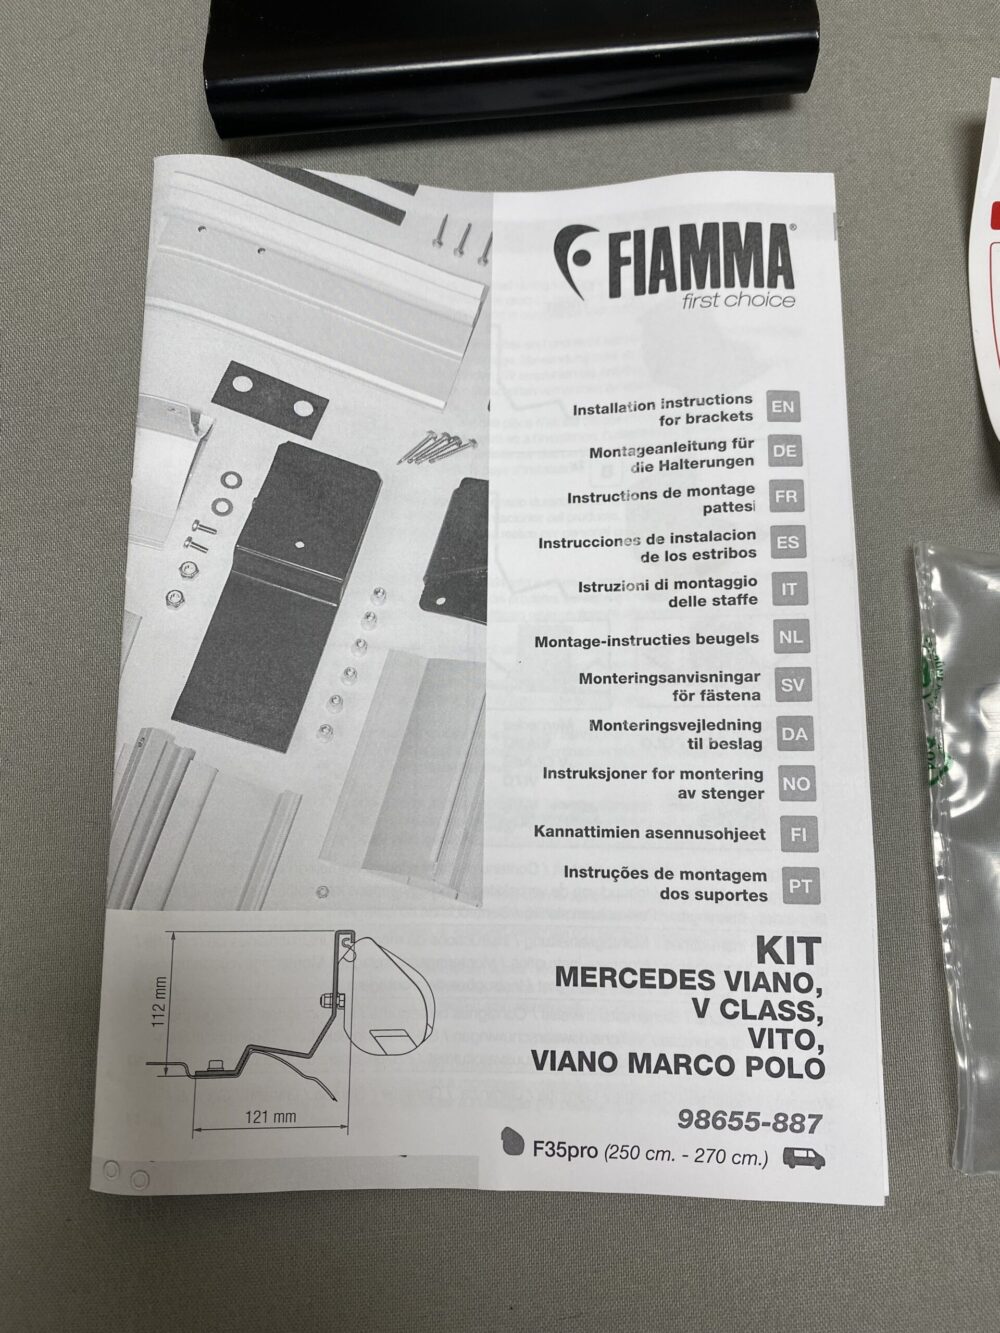 Fiamma Kit Mercedes Viano, Viano Marco Polo, Vito und V Class 98655-887